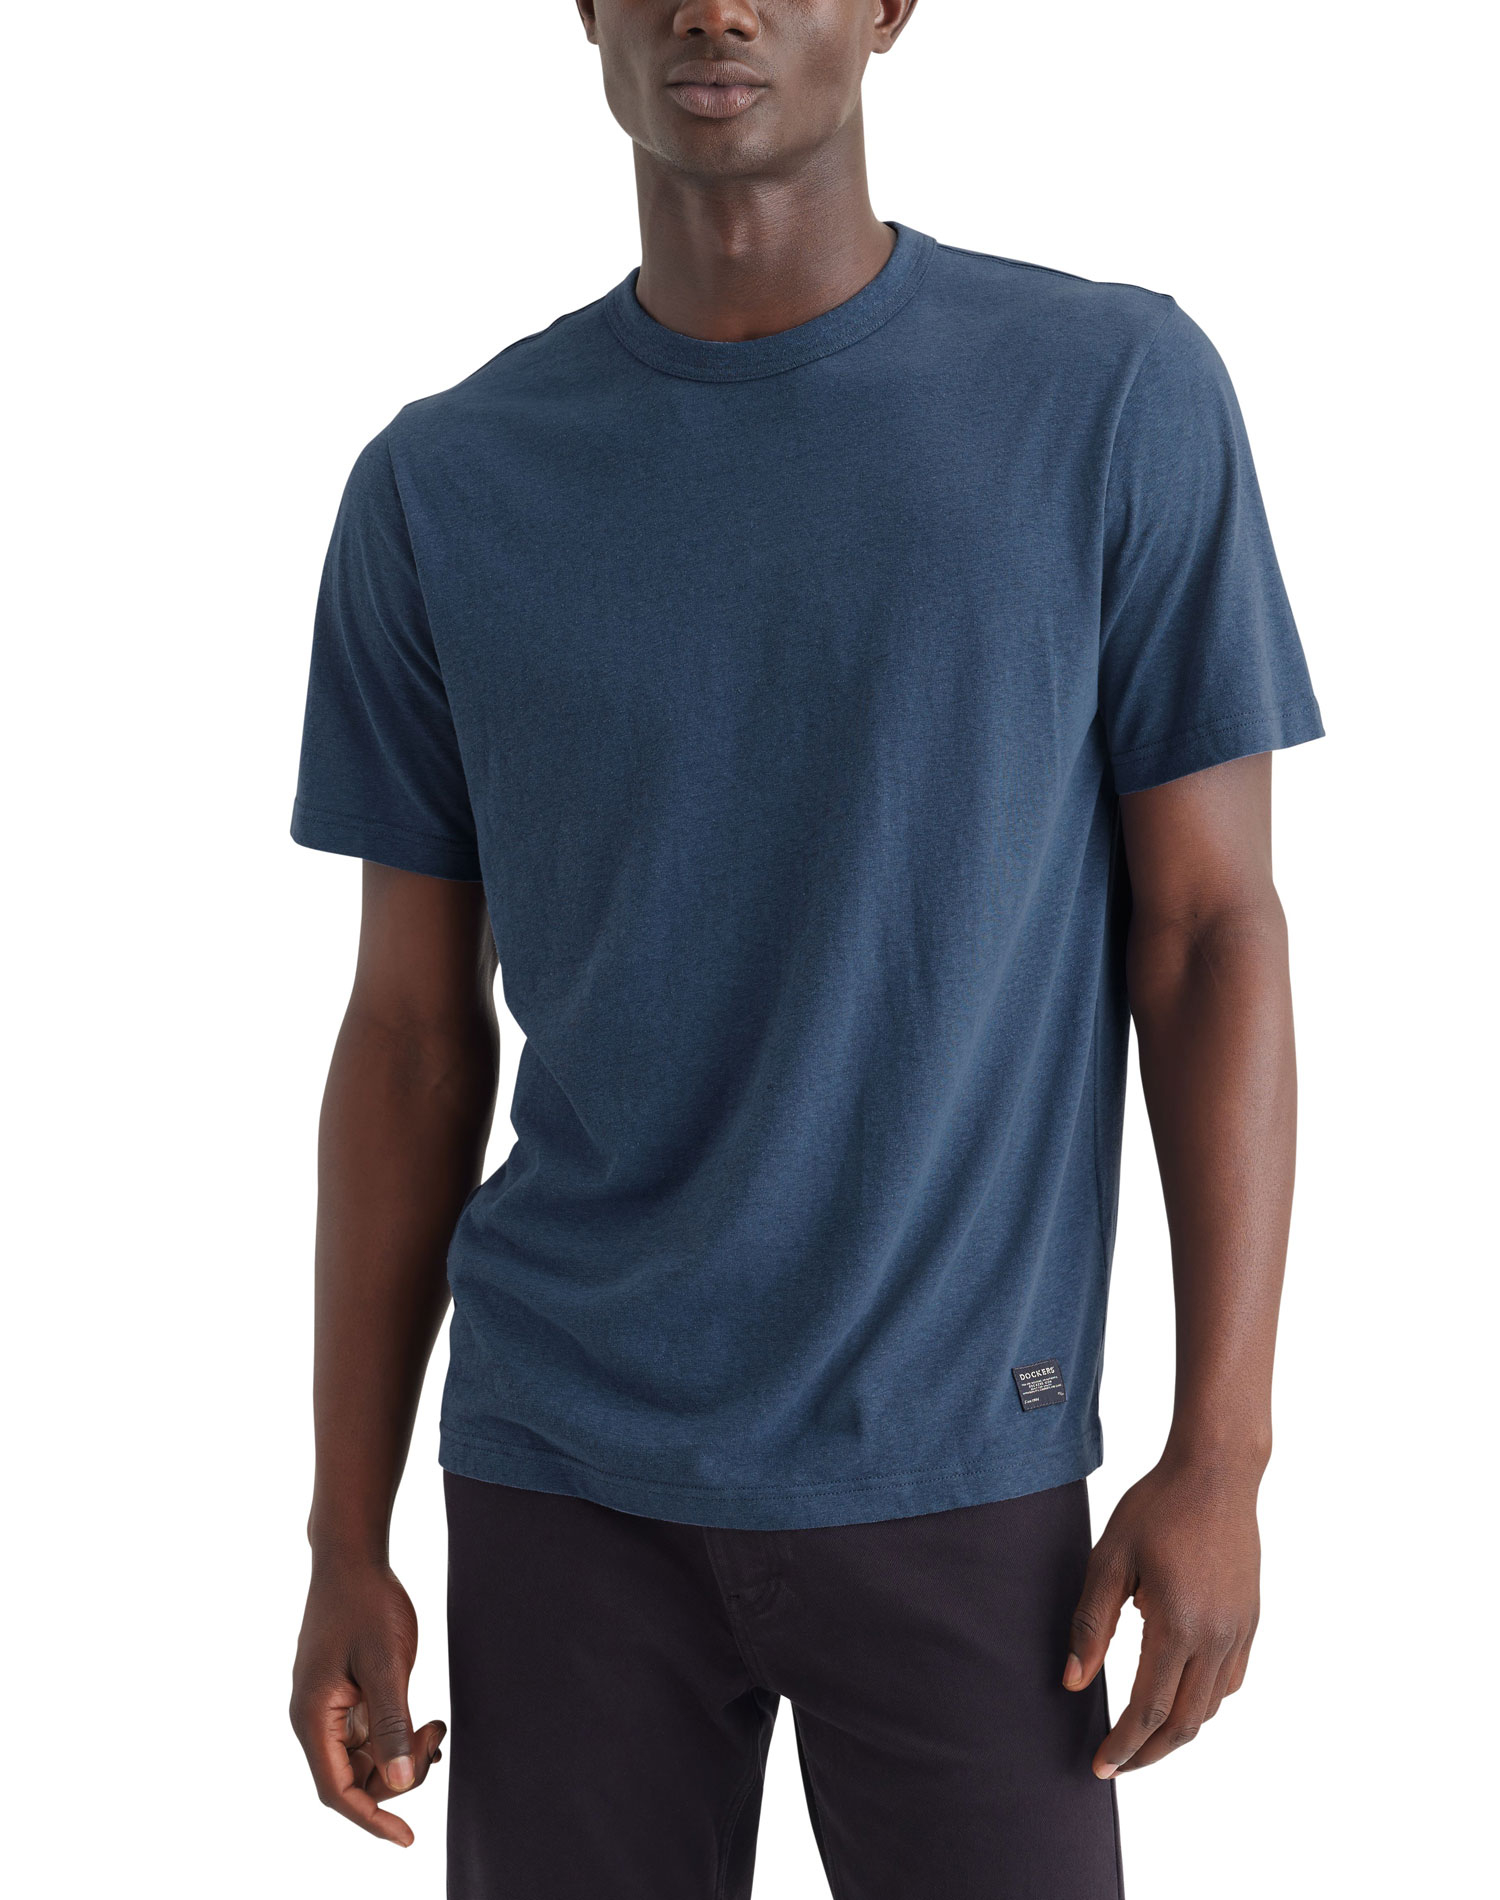 Dockers samarreta d'home de m/c A6928-0003 blava